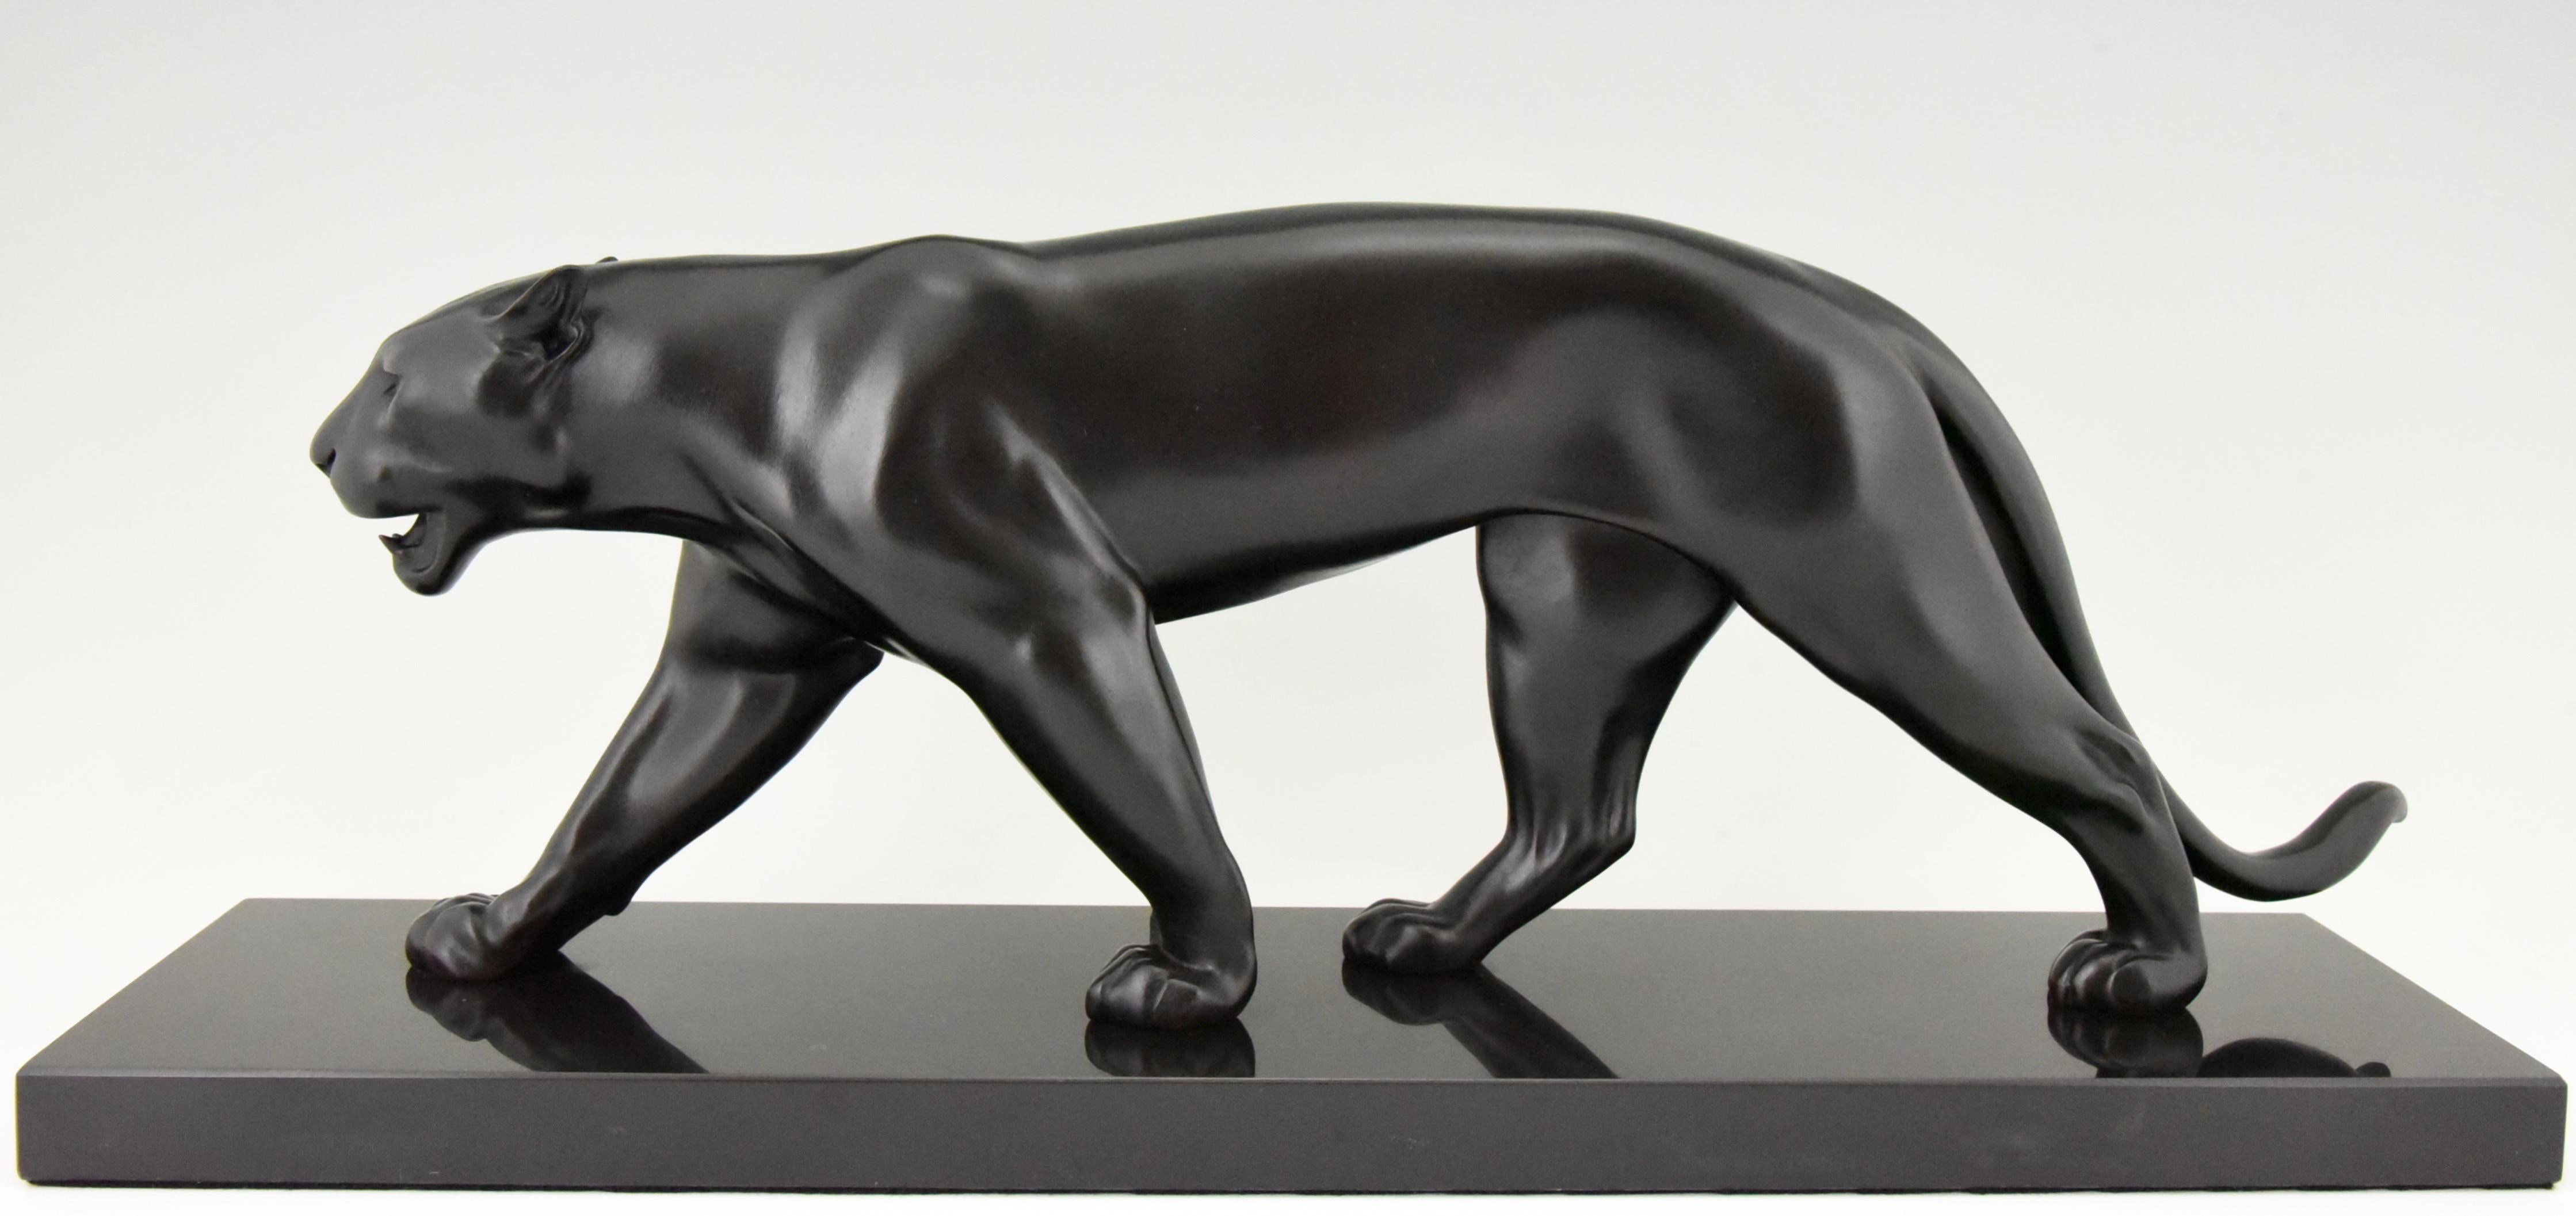 Panther-Skulptur im Art Deco Style BAGHERA von Max Le Verrier.
Signiert Le Verrier und mit Gießereimarke Le Verrier Paris. 
Entworfen um 1920. Posthume zeitgenössische Besetzung. 
Patiniertes Kunstmetall auf schwarzem Marmorsockel. 

Handgefertigt.